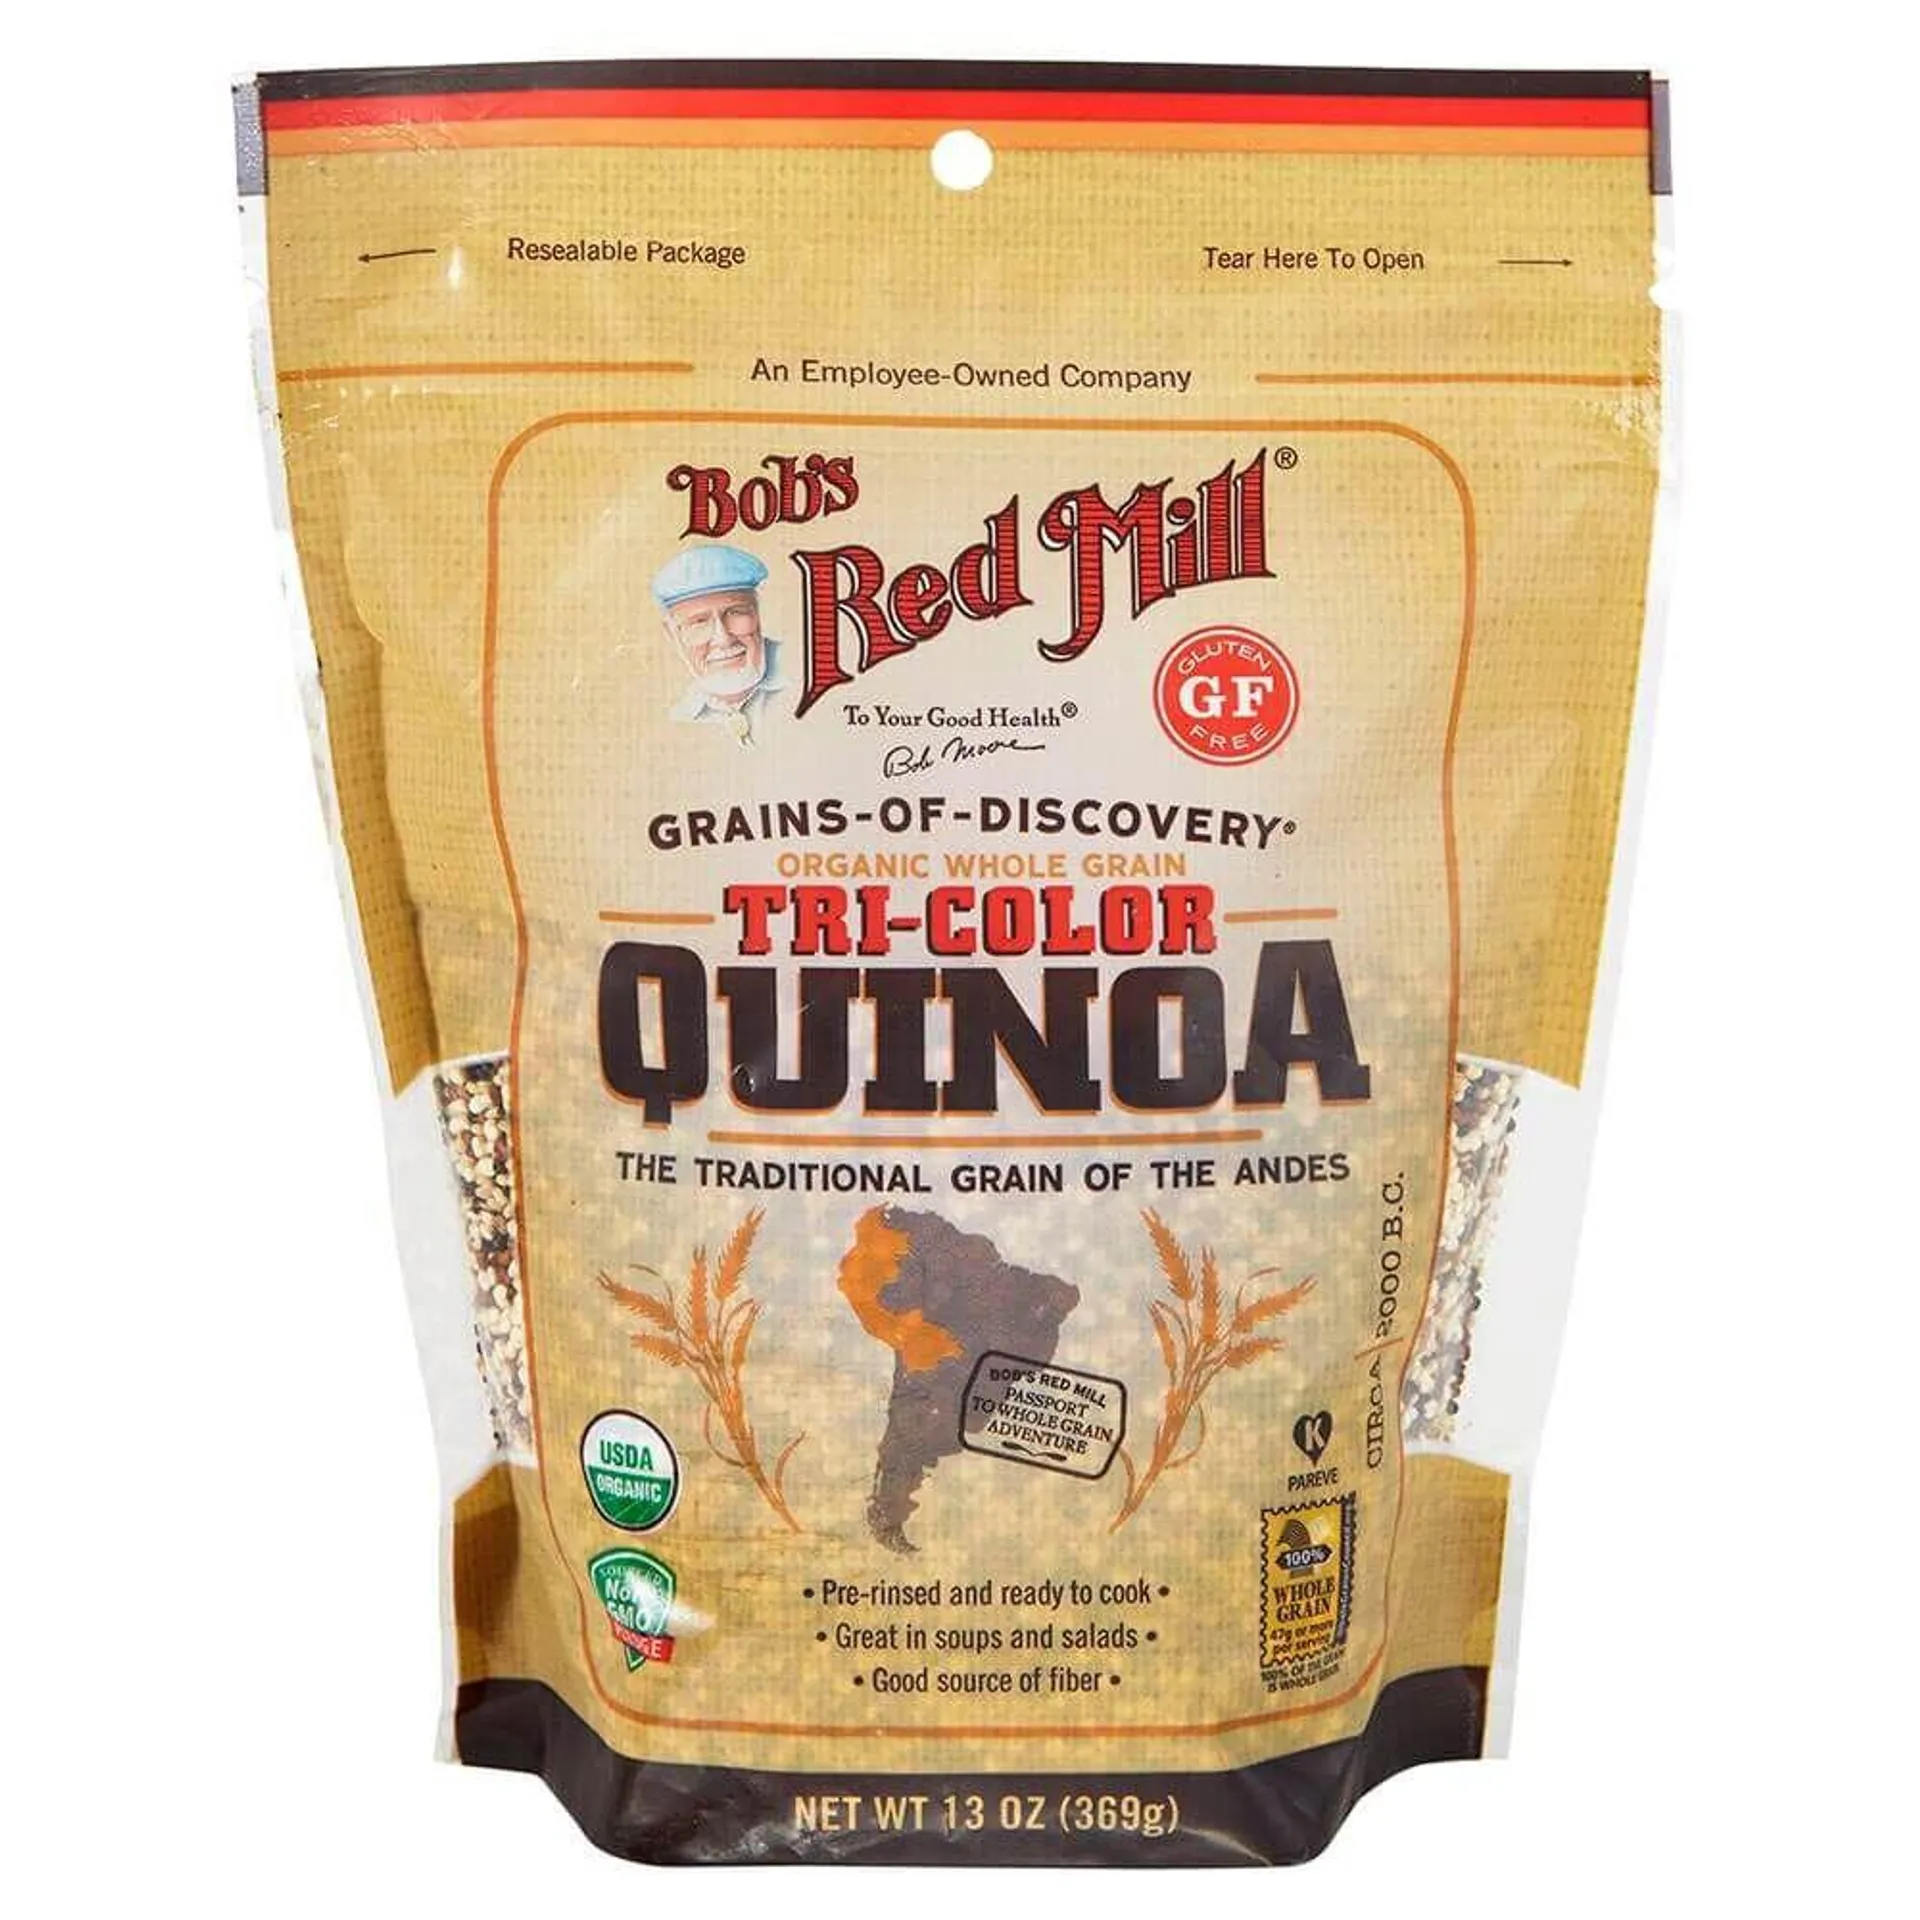 Bob’s Red Mill Organic Whole Grain Tri-Color Quinoa, 13 oz